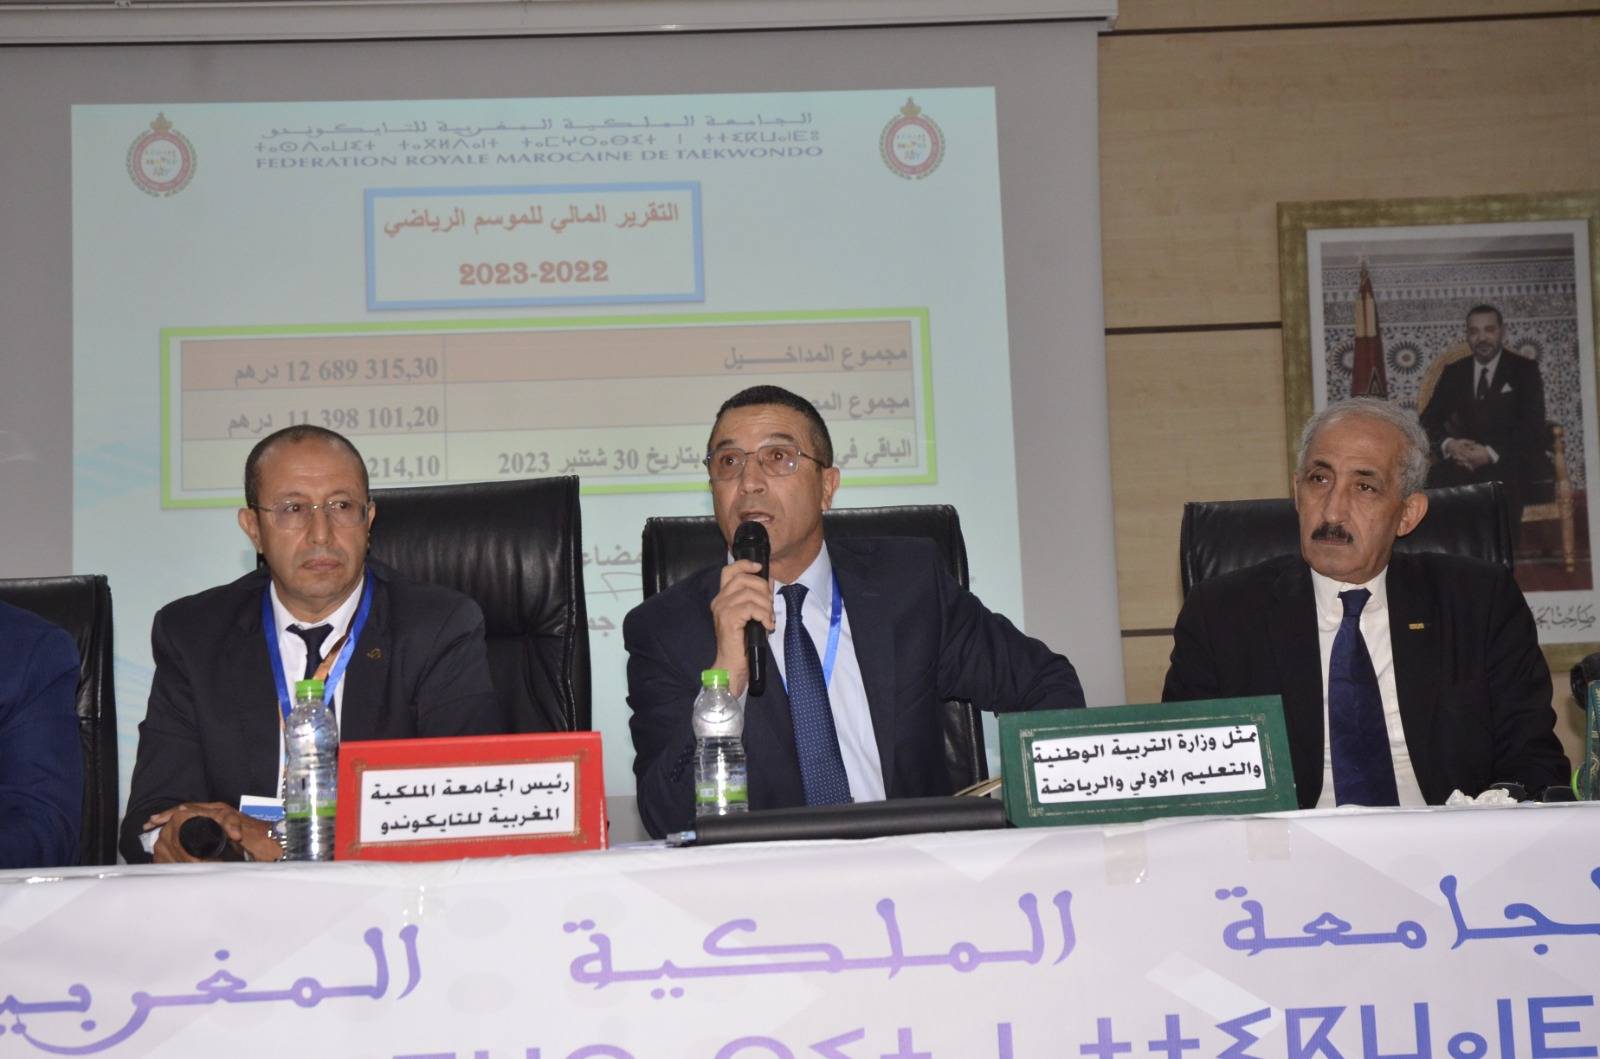  بلاغ خاص بالجمع العام للجامعة الملكية المغربية للتايكوندو برسم الموسم الرياضي 2022-2023